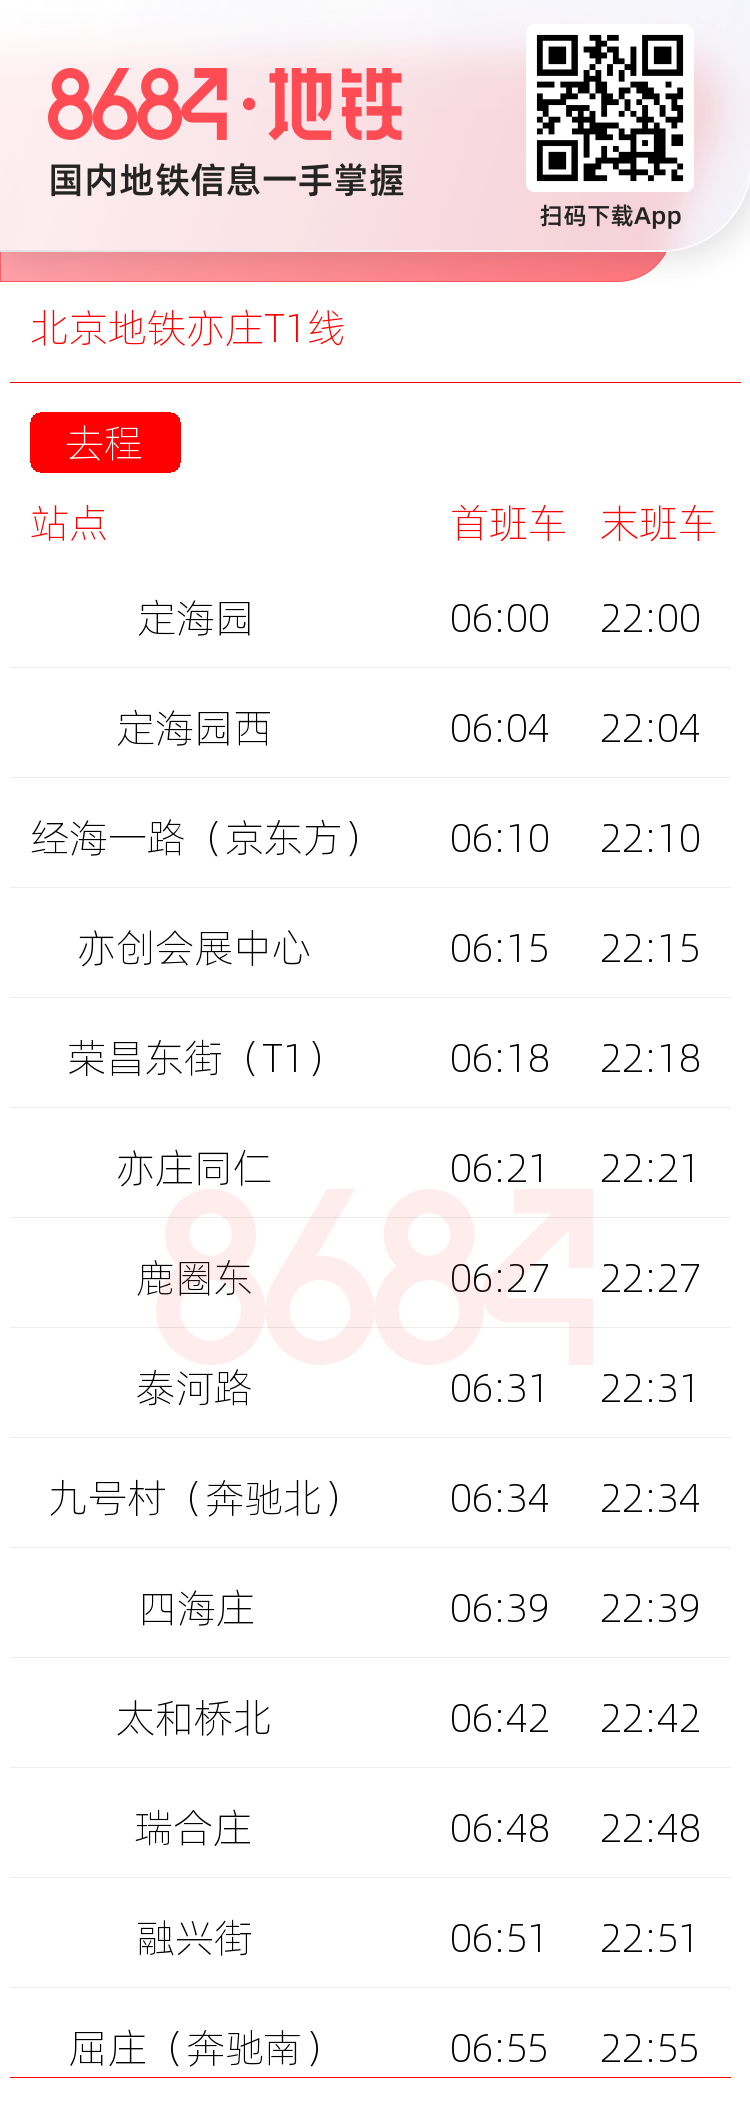 北京地铁亦庄T1线运营时间表